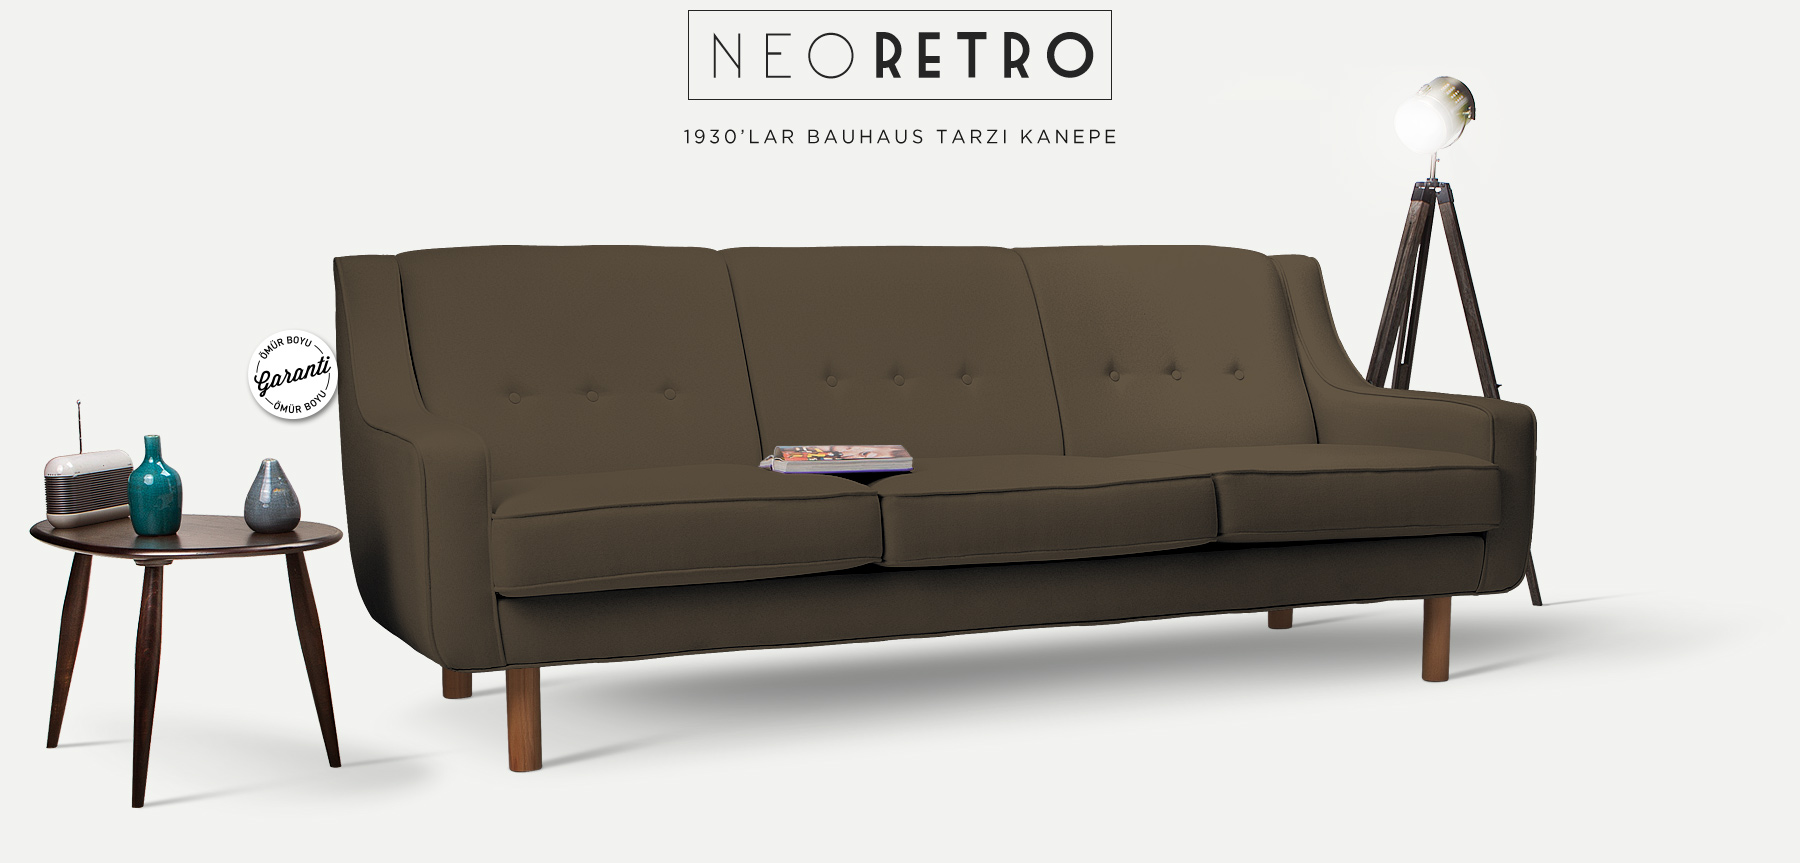 Neoretro™ Üçlü Kahverengi Kanepe'in resmi